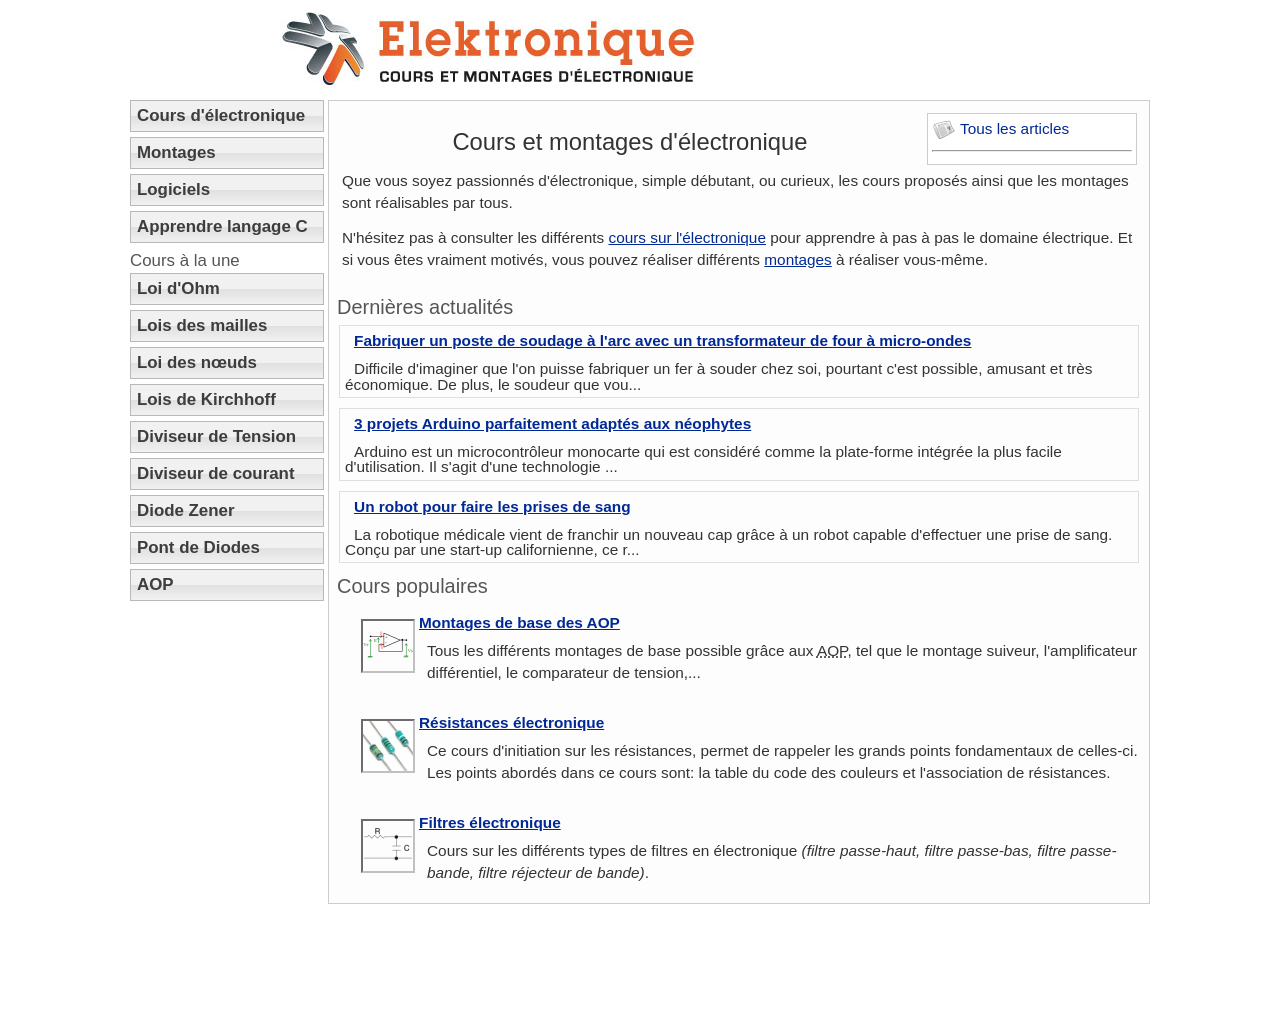 www.elektronique.fr